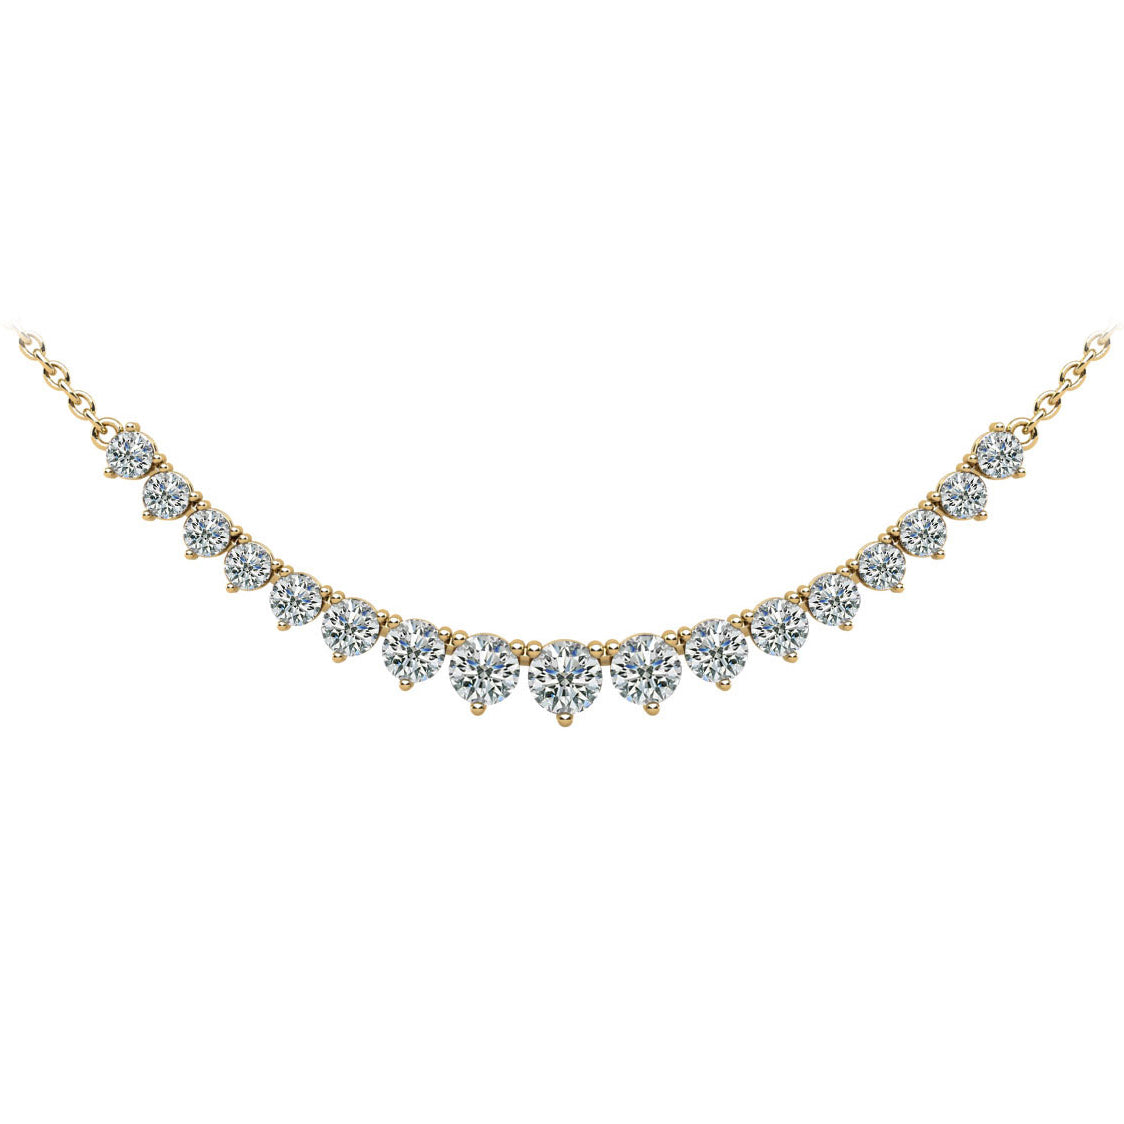 Diamond Row Necklace - 2ct